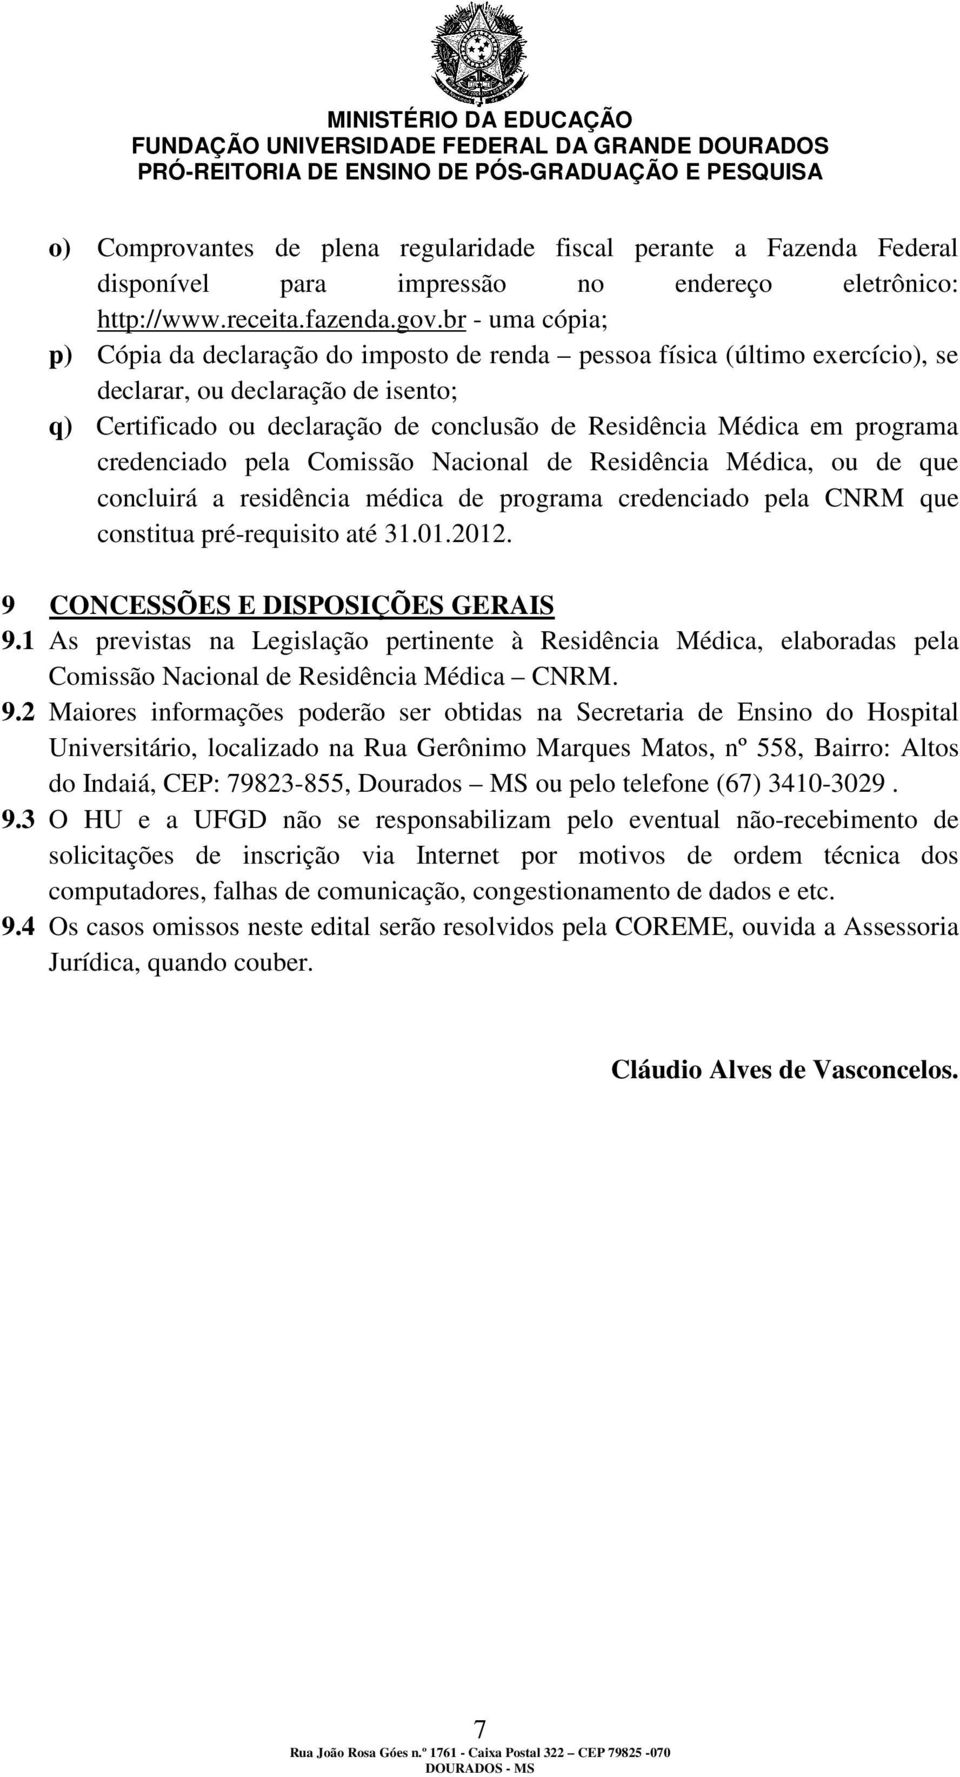 programa credenciado pela Comissão Nacional de Residência Médica, ou de que concluirá a residência médica de programa credenciado pela CNRM que constitua pré-requisito até 31.01.2012.